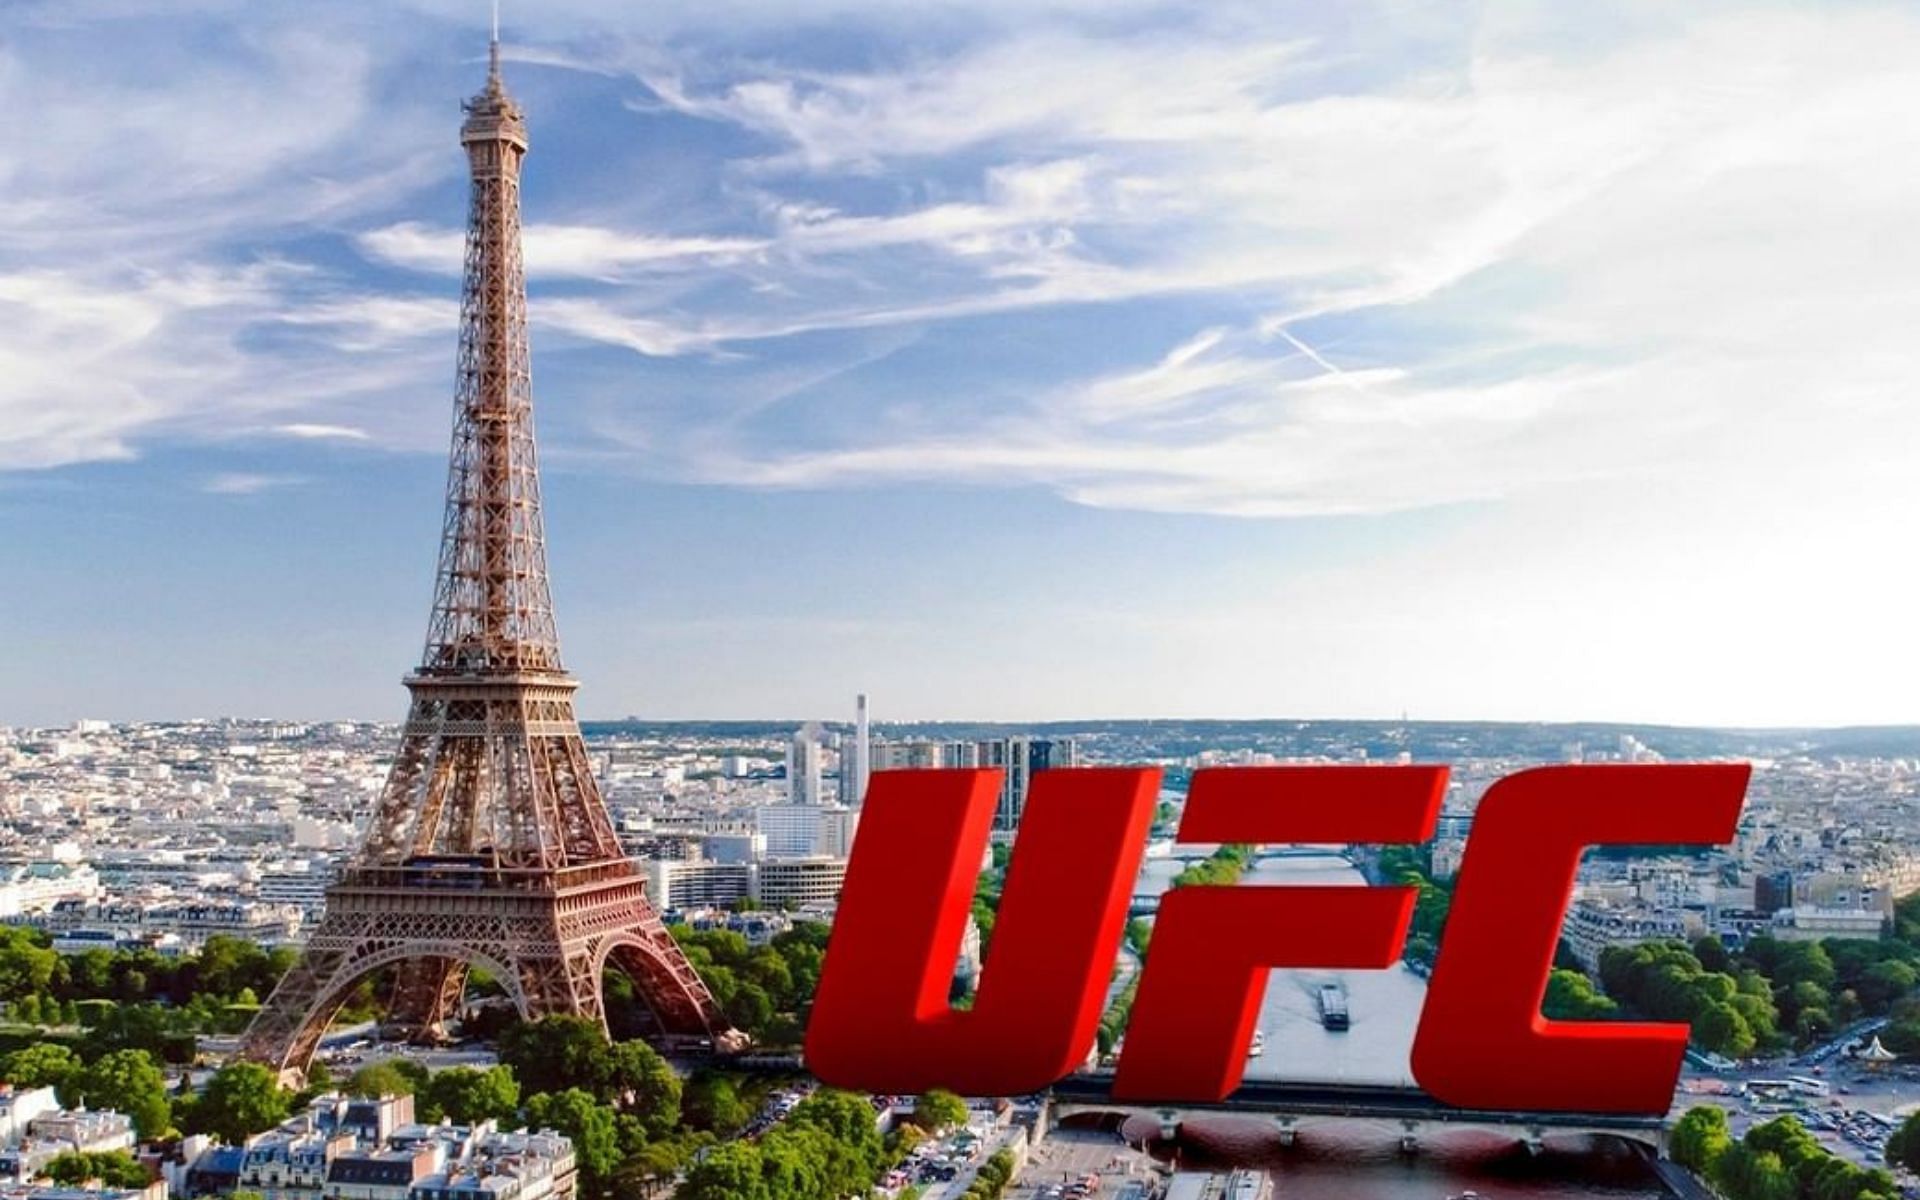 UFC Paris promotional poster (image courtesy @ufcfra Instagram)